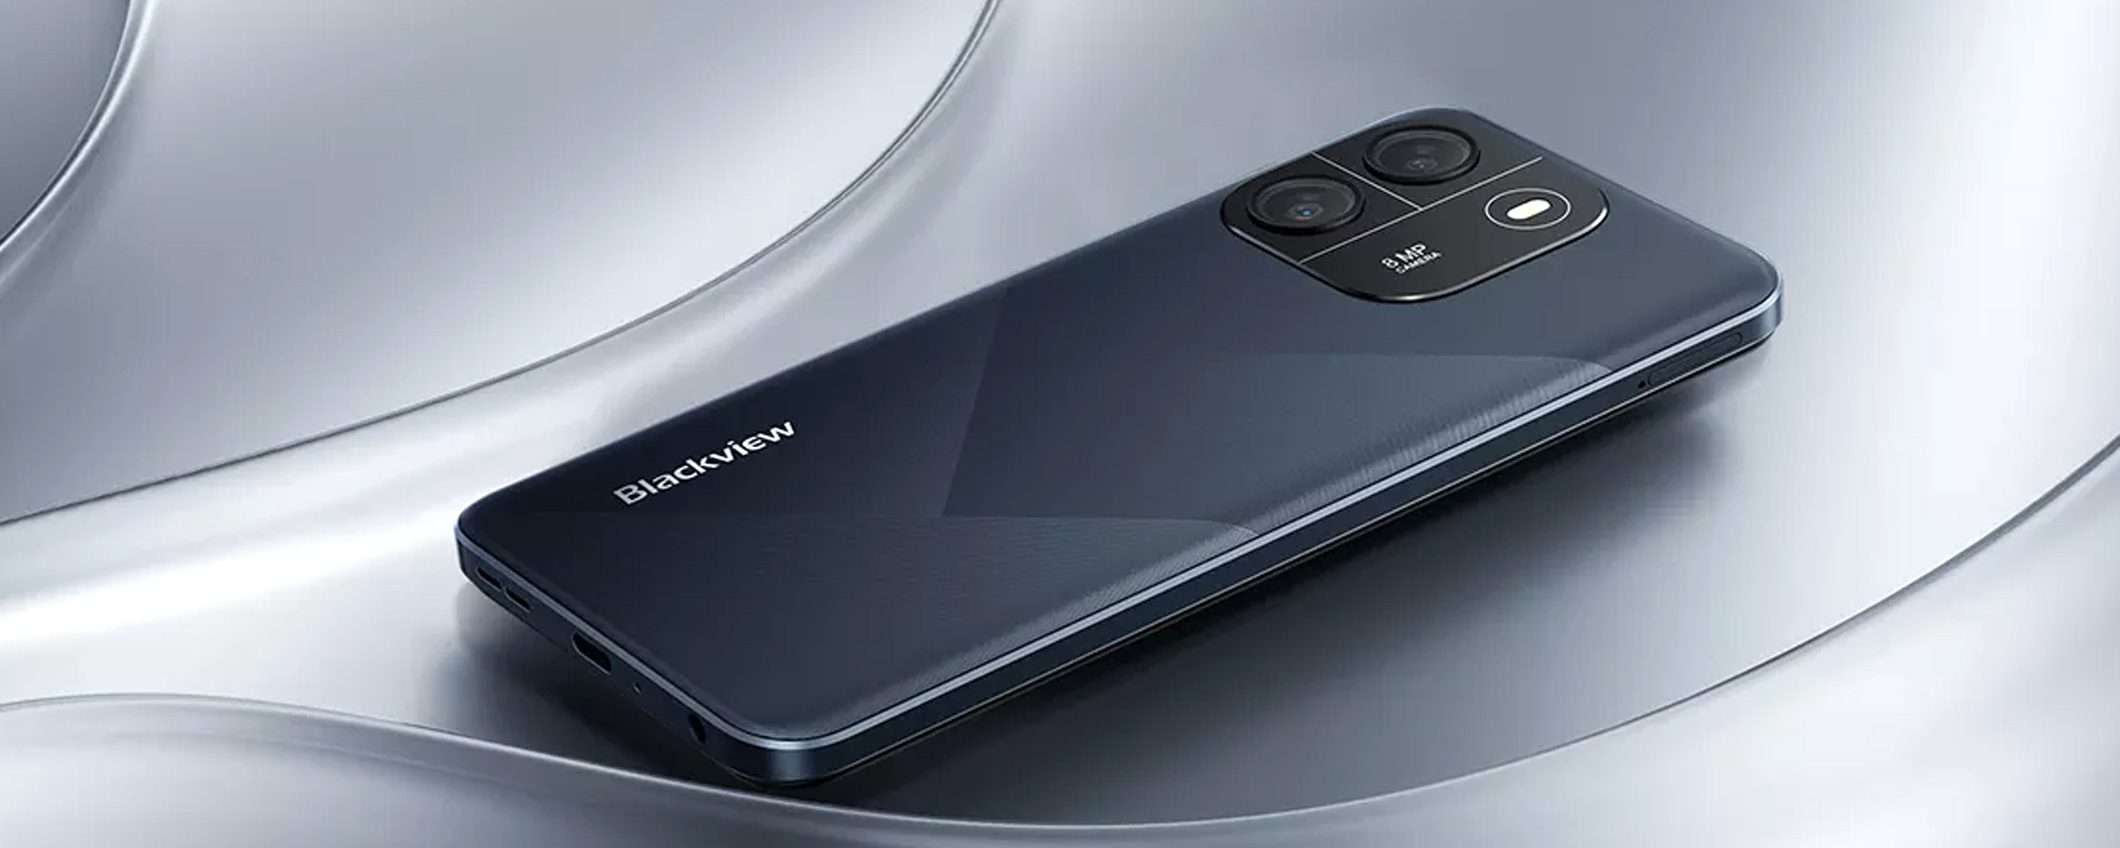 Smartphone Blackview Wave 6c nuovo - Telefonia In vendita a Pordenone